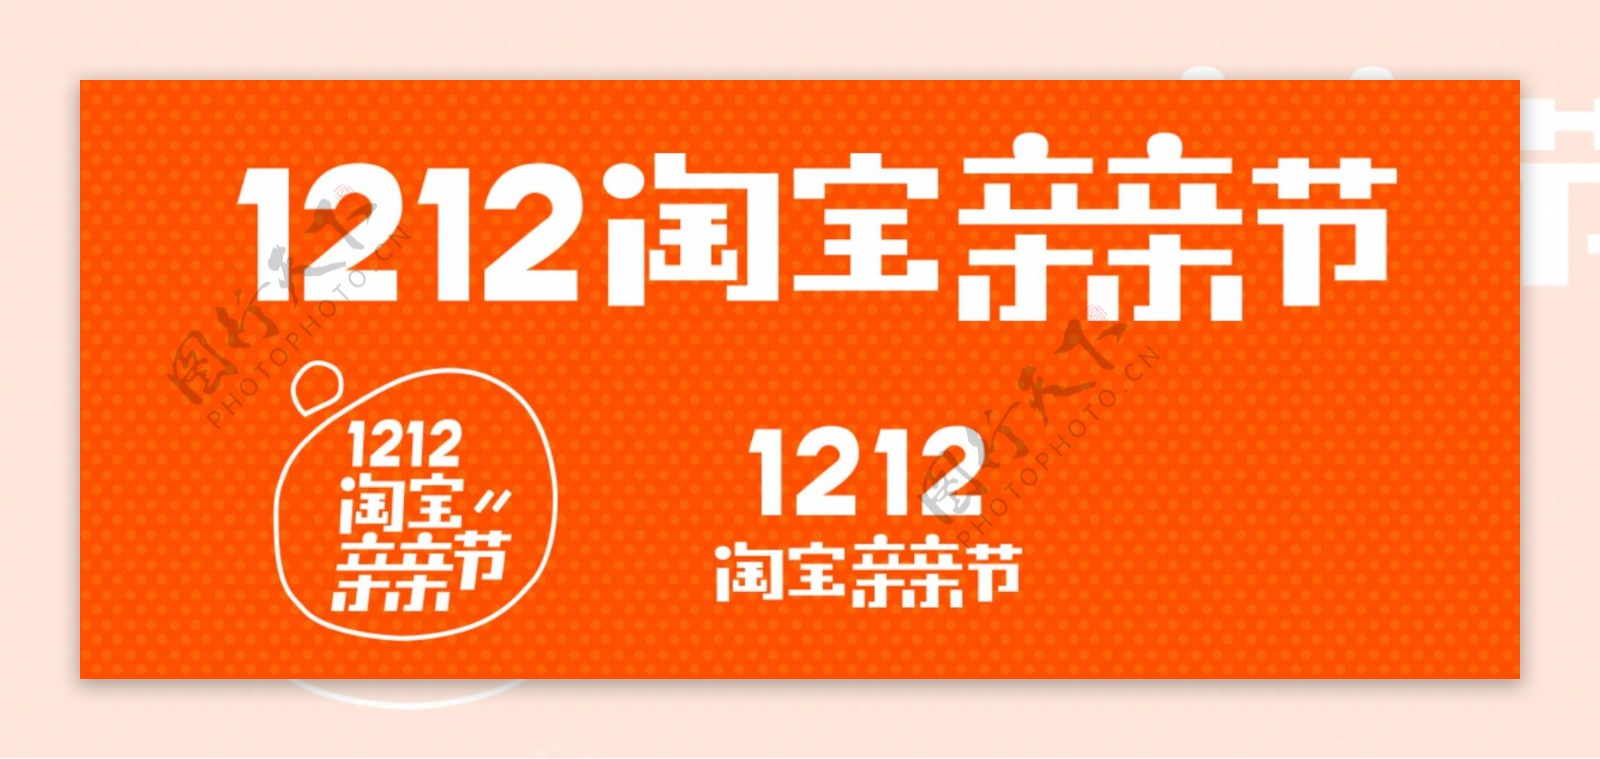 1212淘宝亲亲节logo